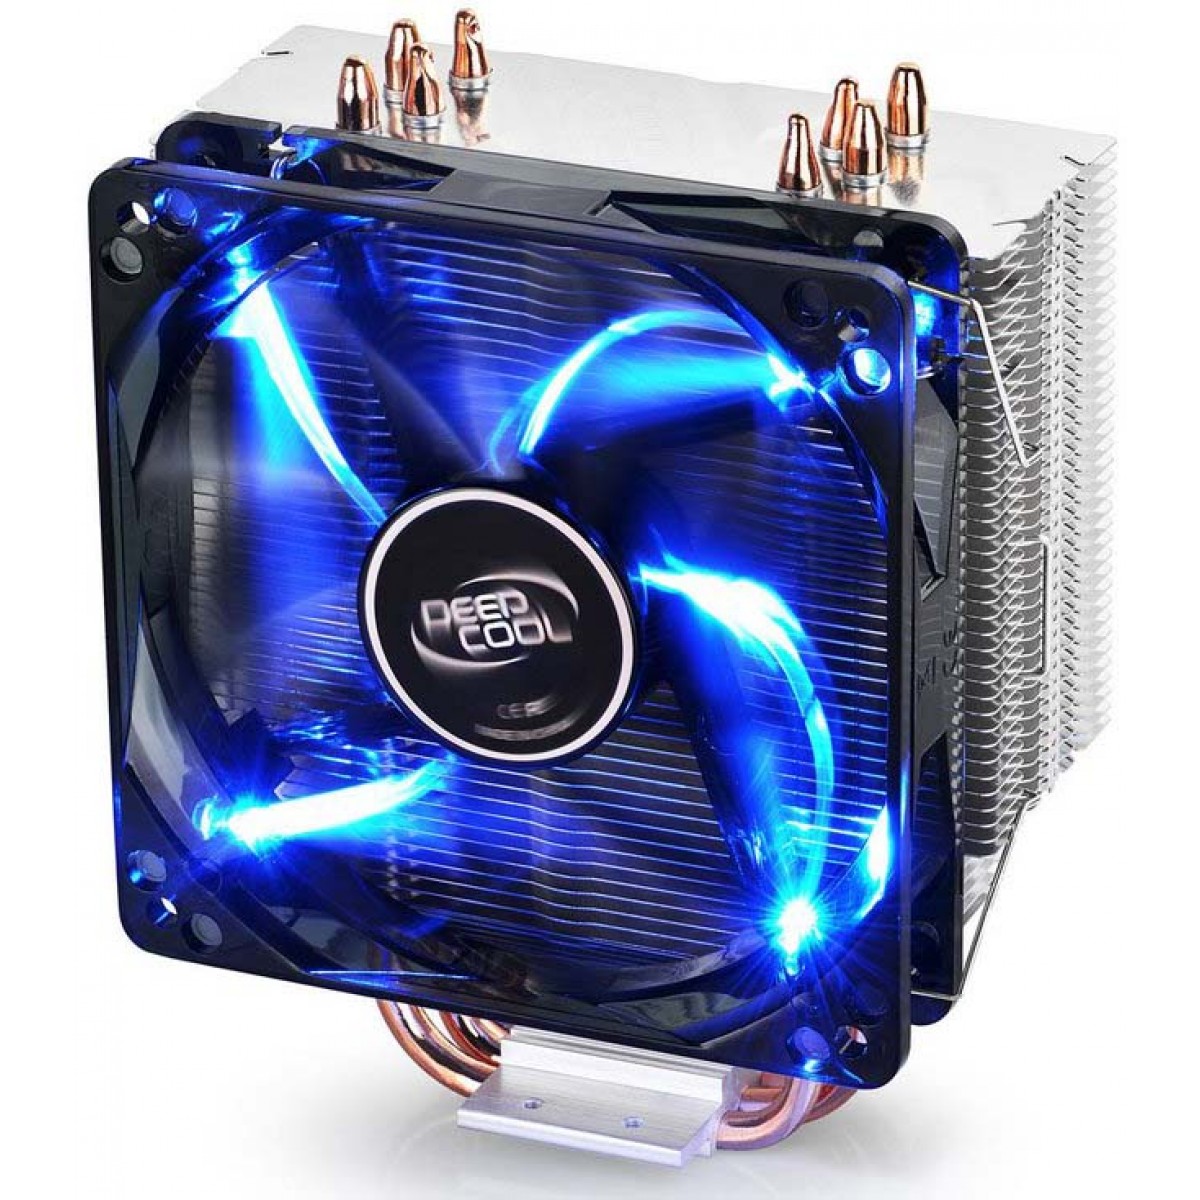 Cooler para Processador DeepCool Gammaxx 400, LED Blue 120mm, Intel-AMD, DP-MCH4-GMX400